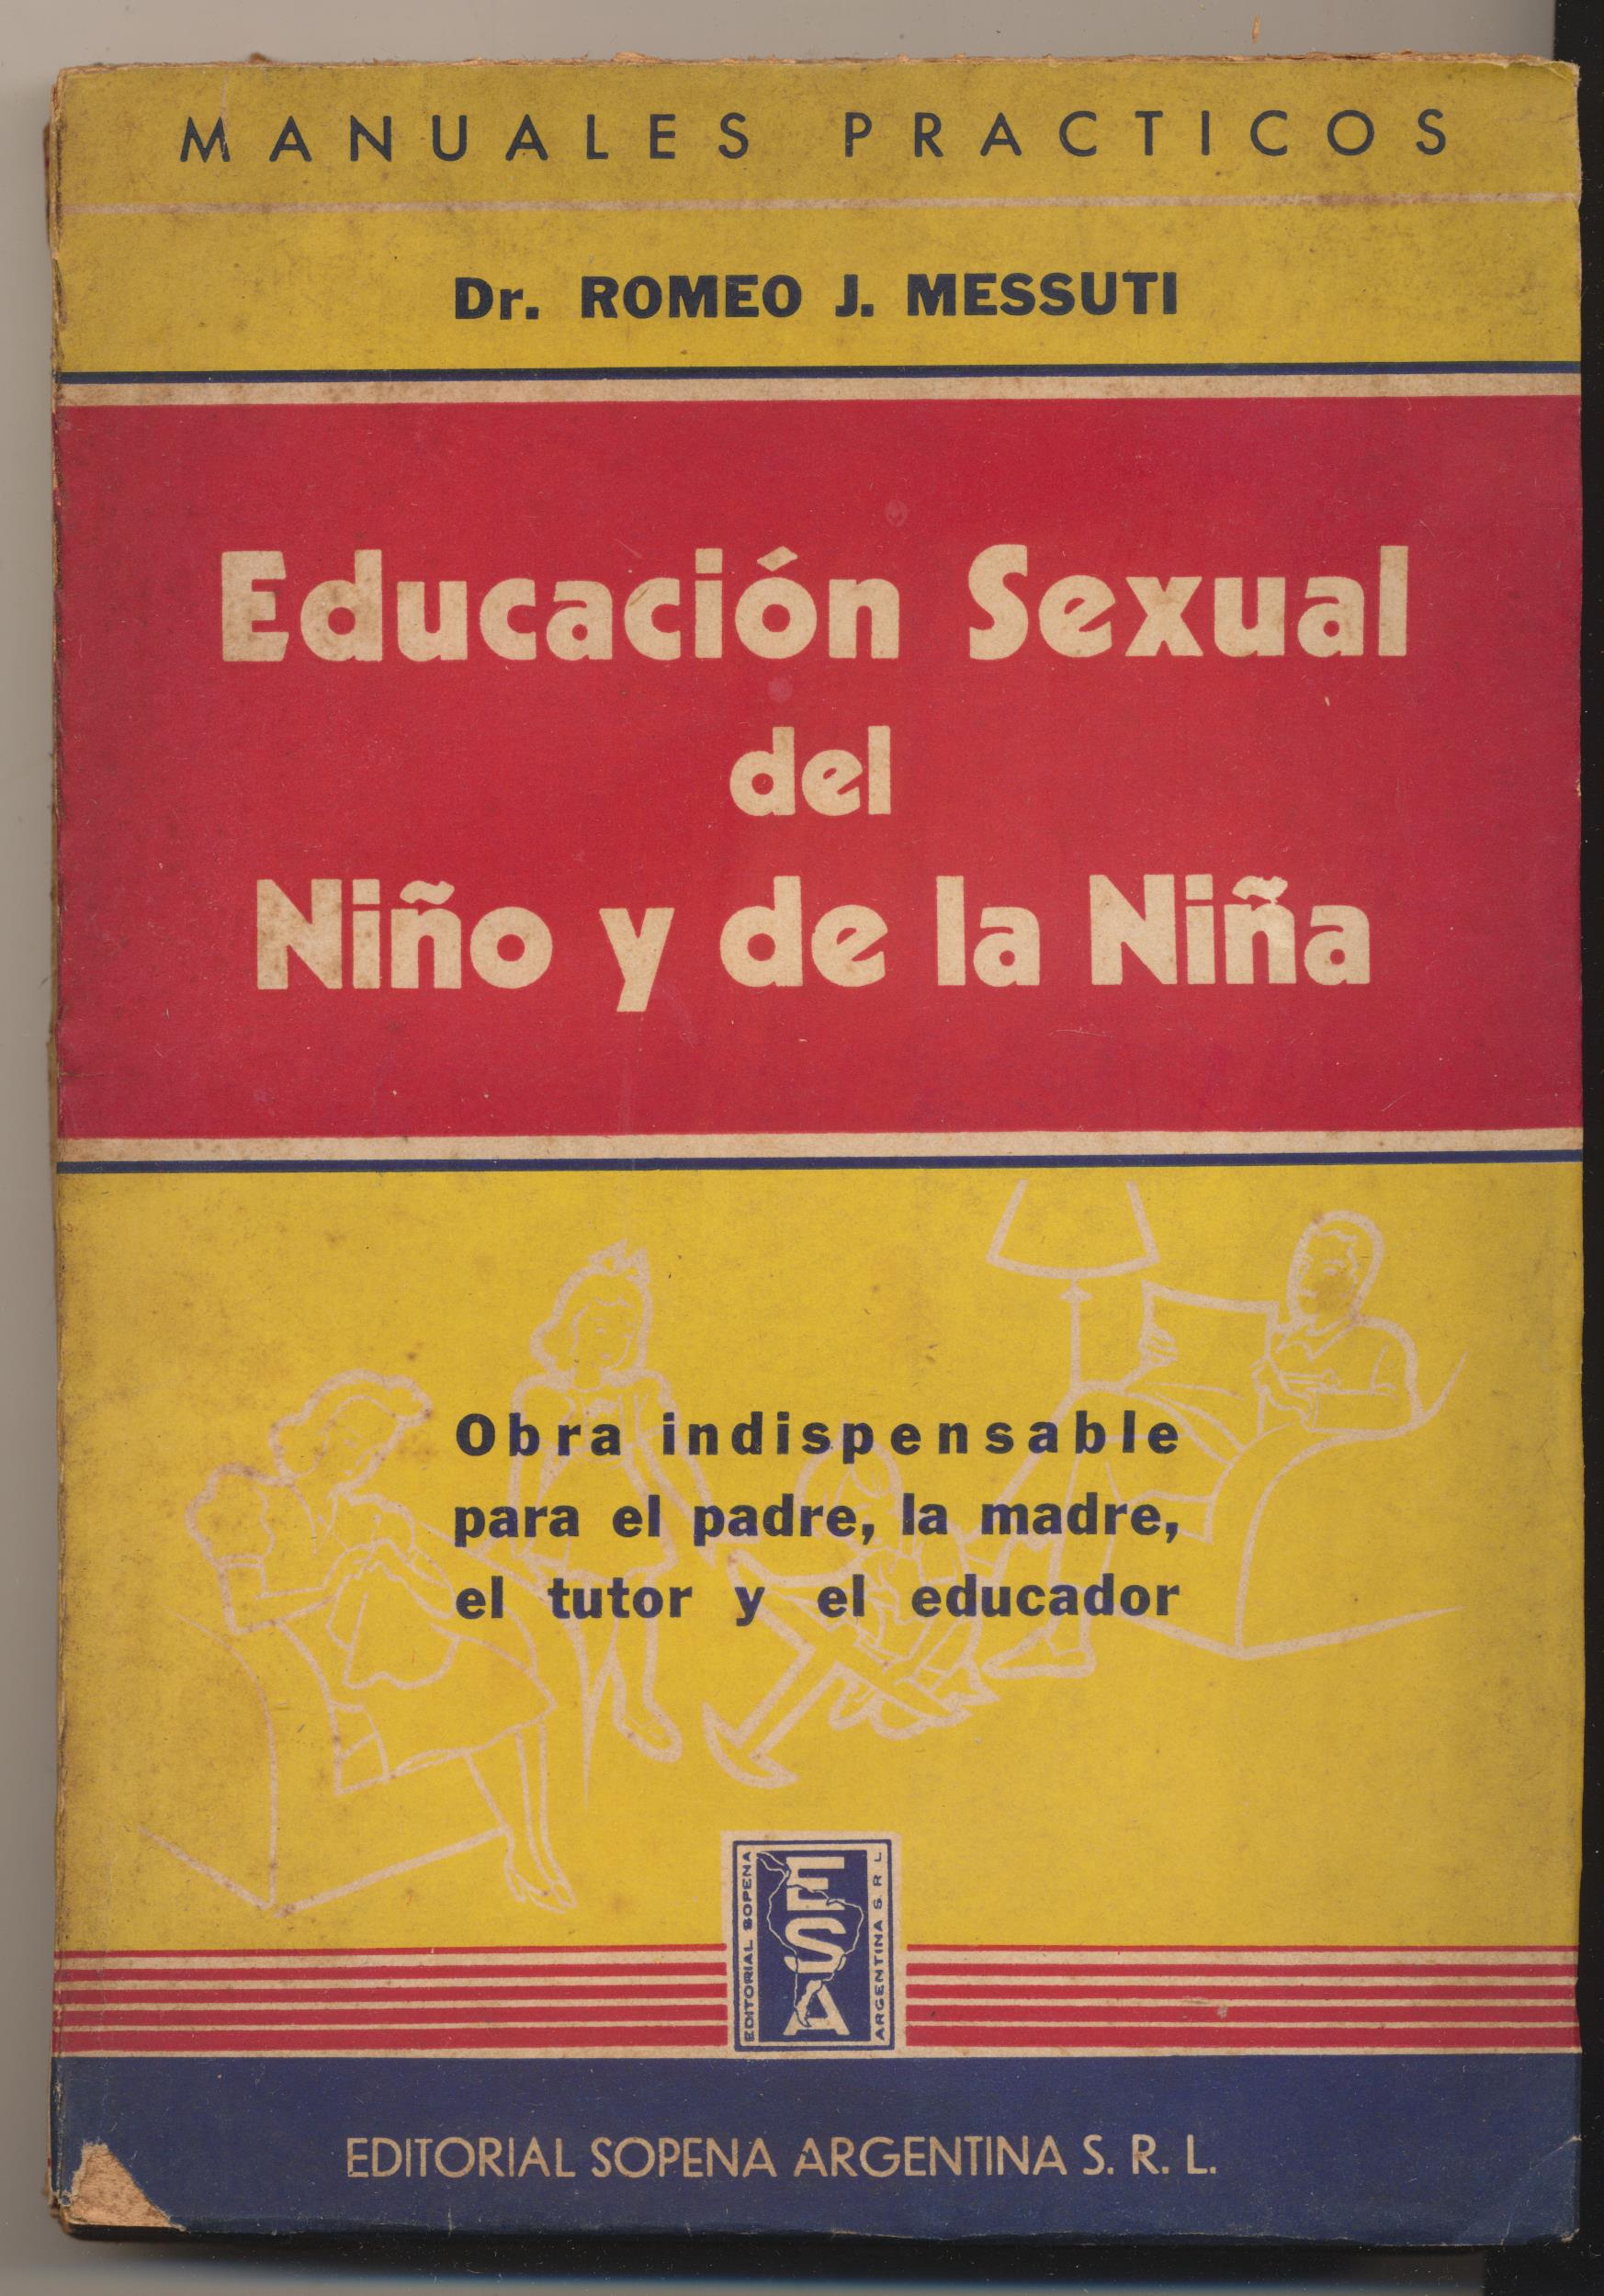 Dr. Romeo J. Messuti. Educación Sexual del Niño y de la Niña. 2ª Edición Sopena Argentina 1943. SIN ABRIR